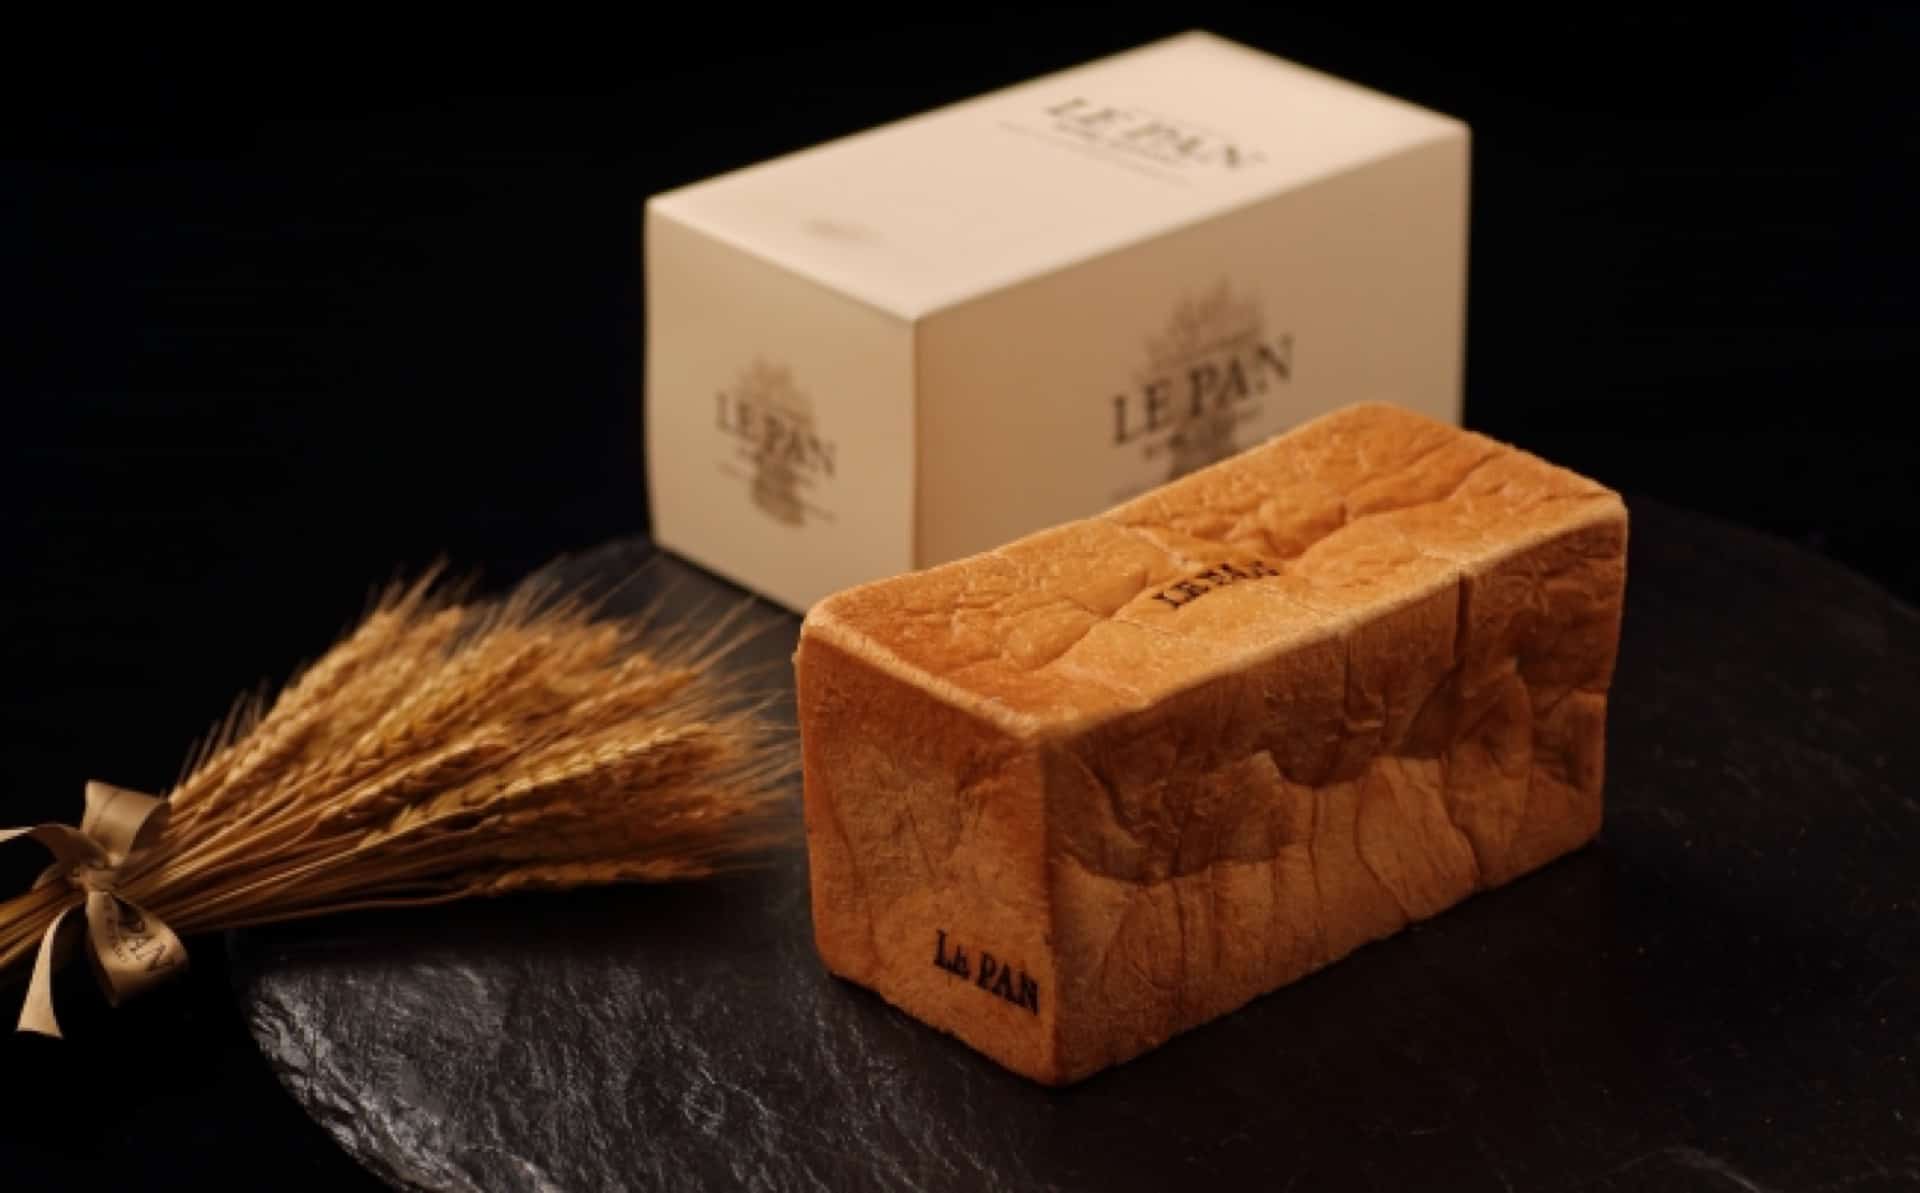 これこそ究極の食パン。ル・パン神戸北野からKING OF 食パン「Le Roi（ル・ロワ）」登場